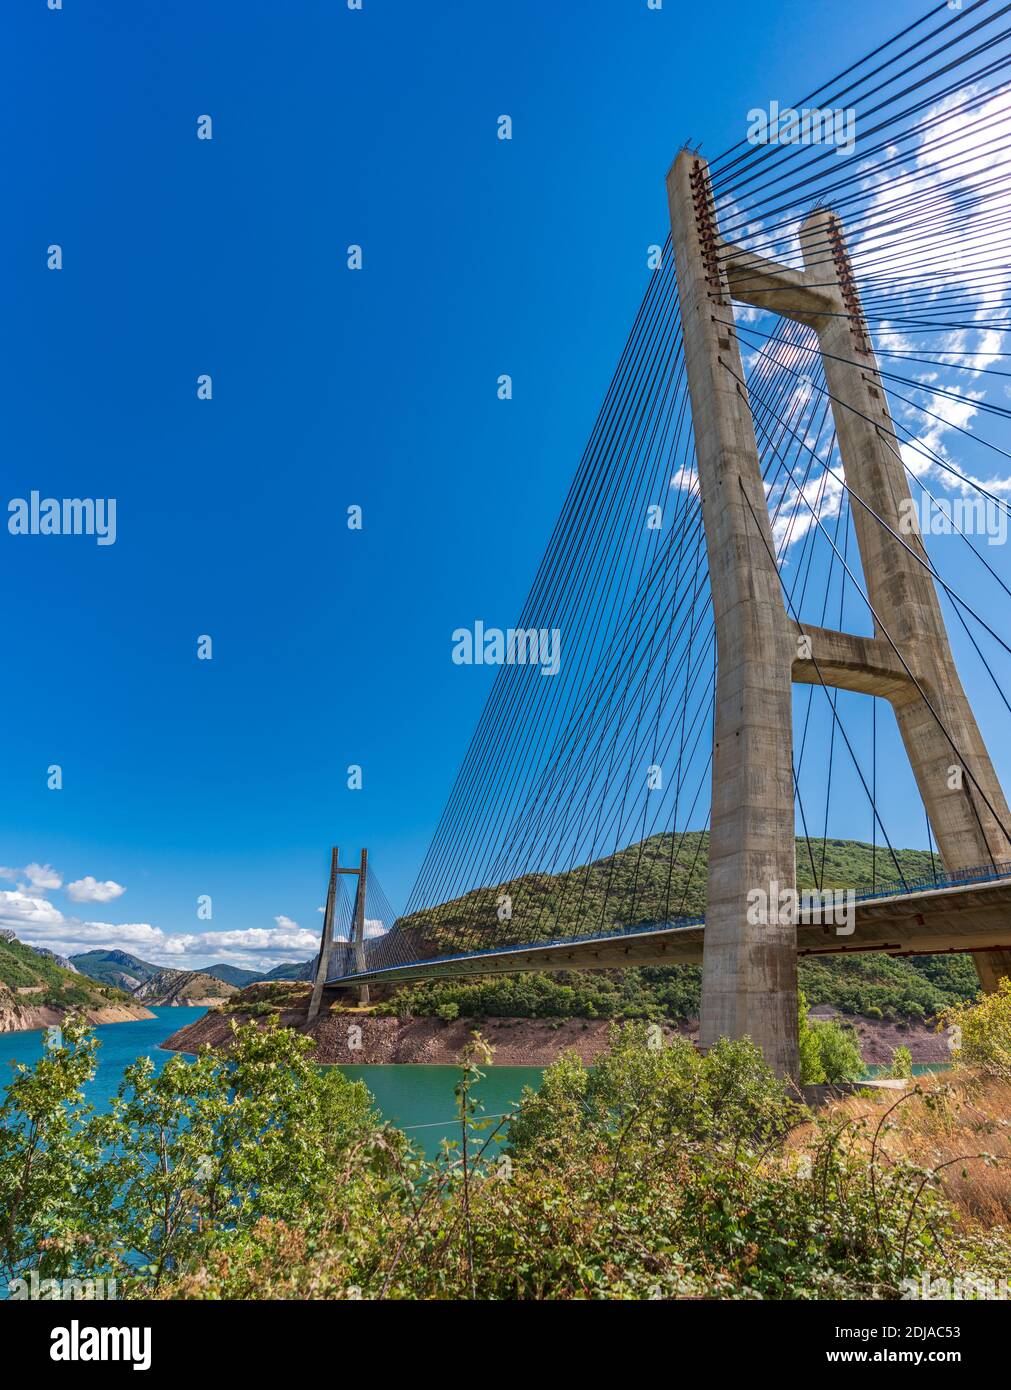 Hängebrücke und Damm über blauem Himmel, vertikale Komposition Stockfoto